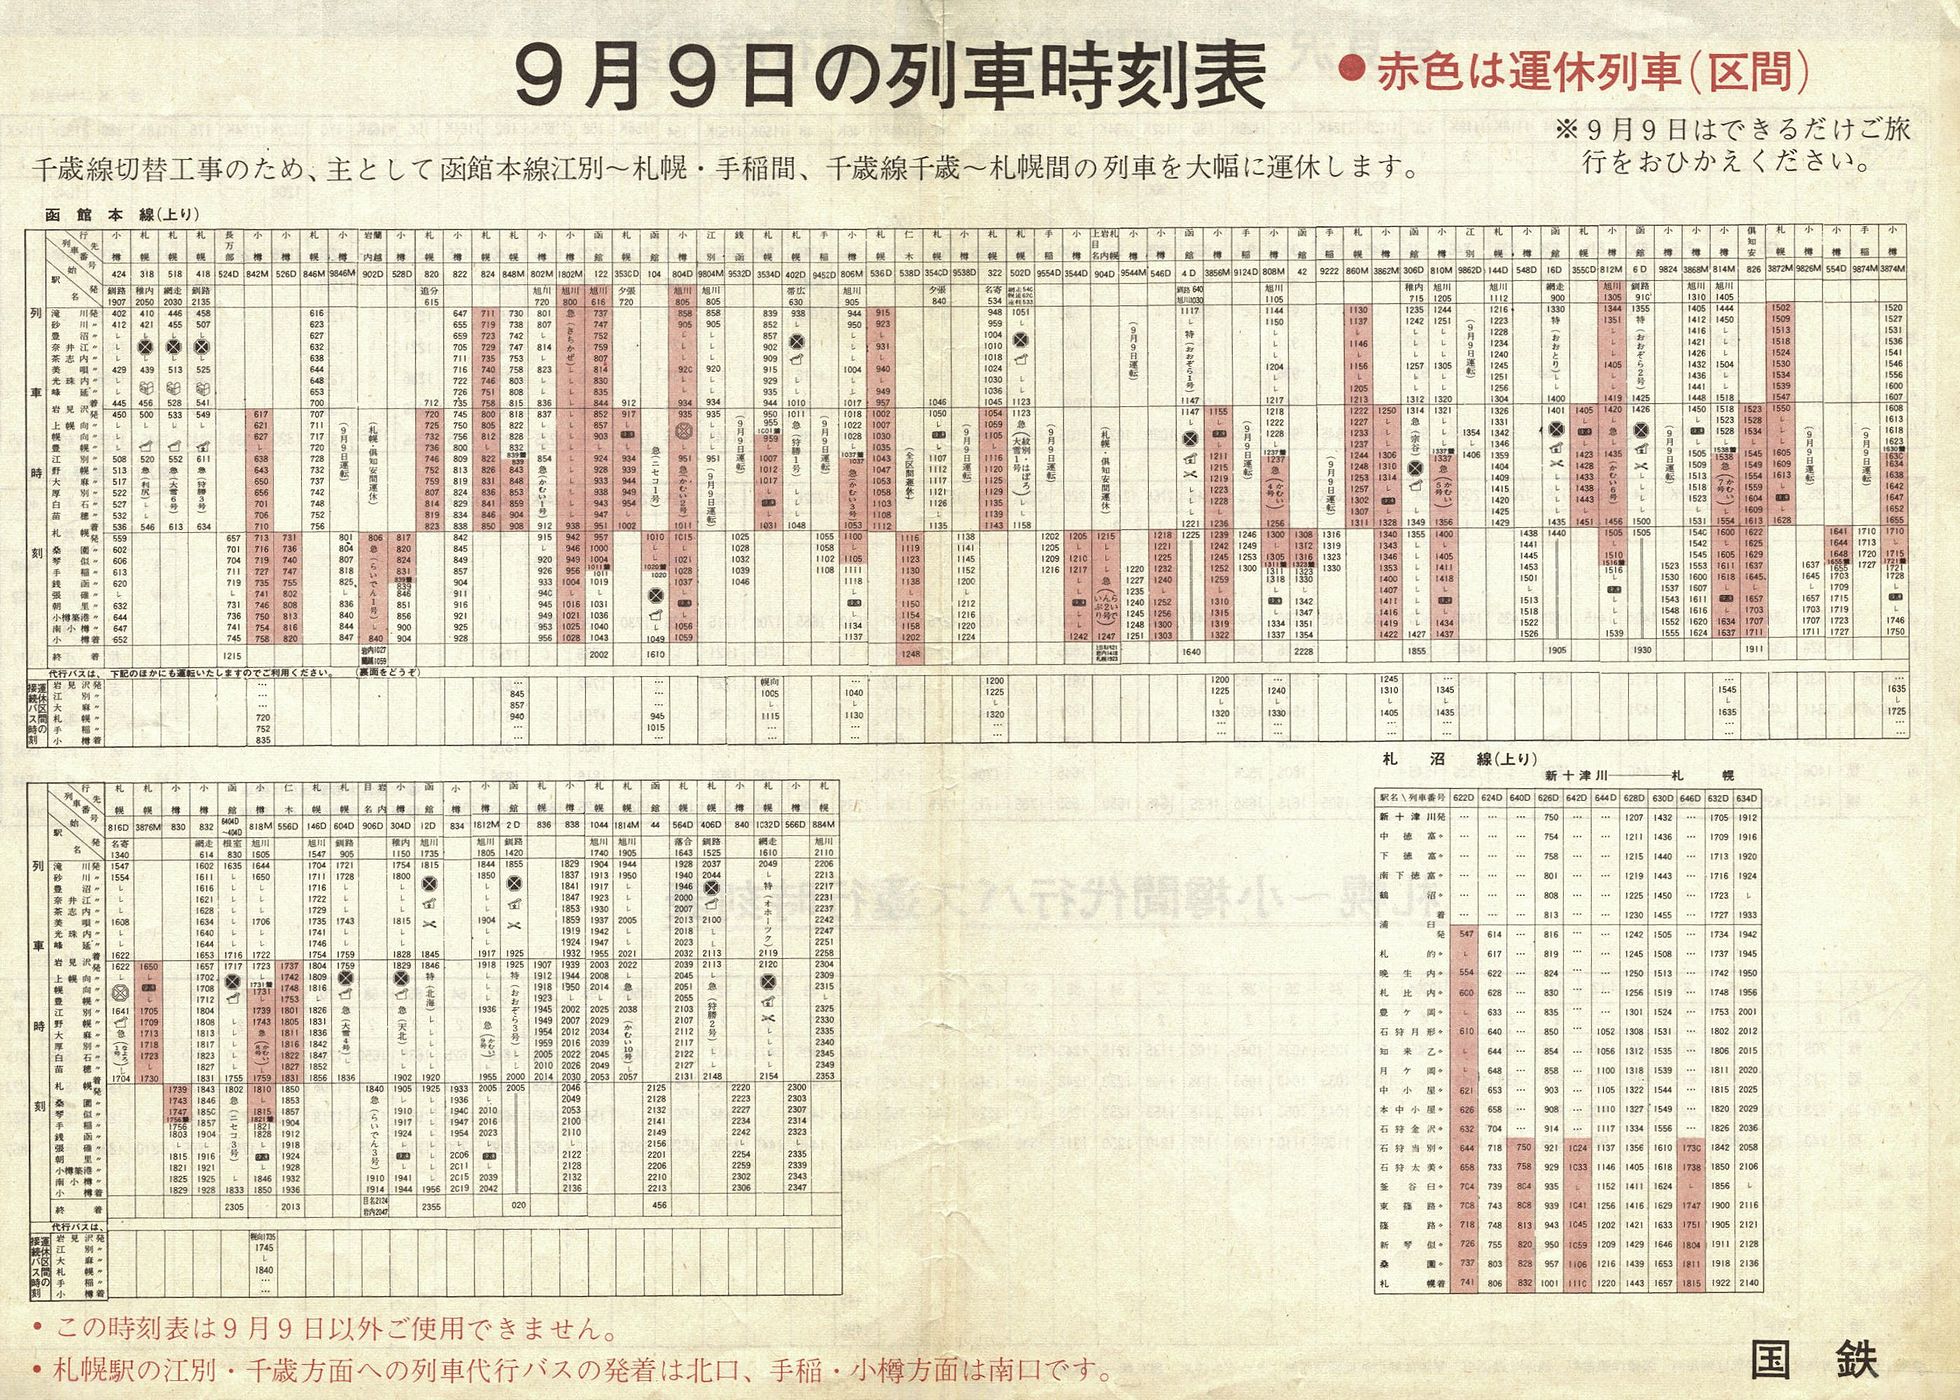 1973-09-09実施_国鉄千歳線切替_函館本線上り列車時刻表